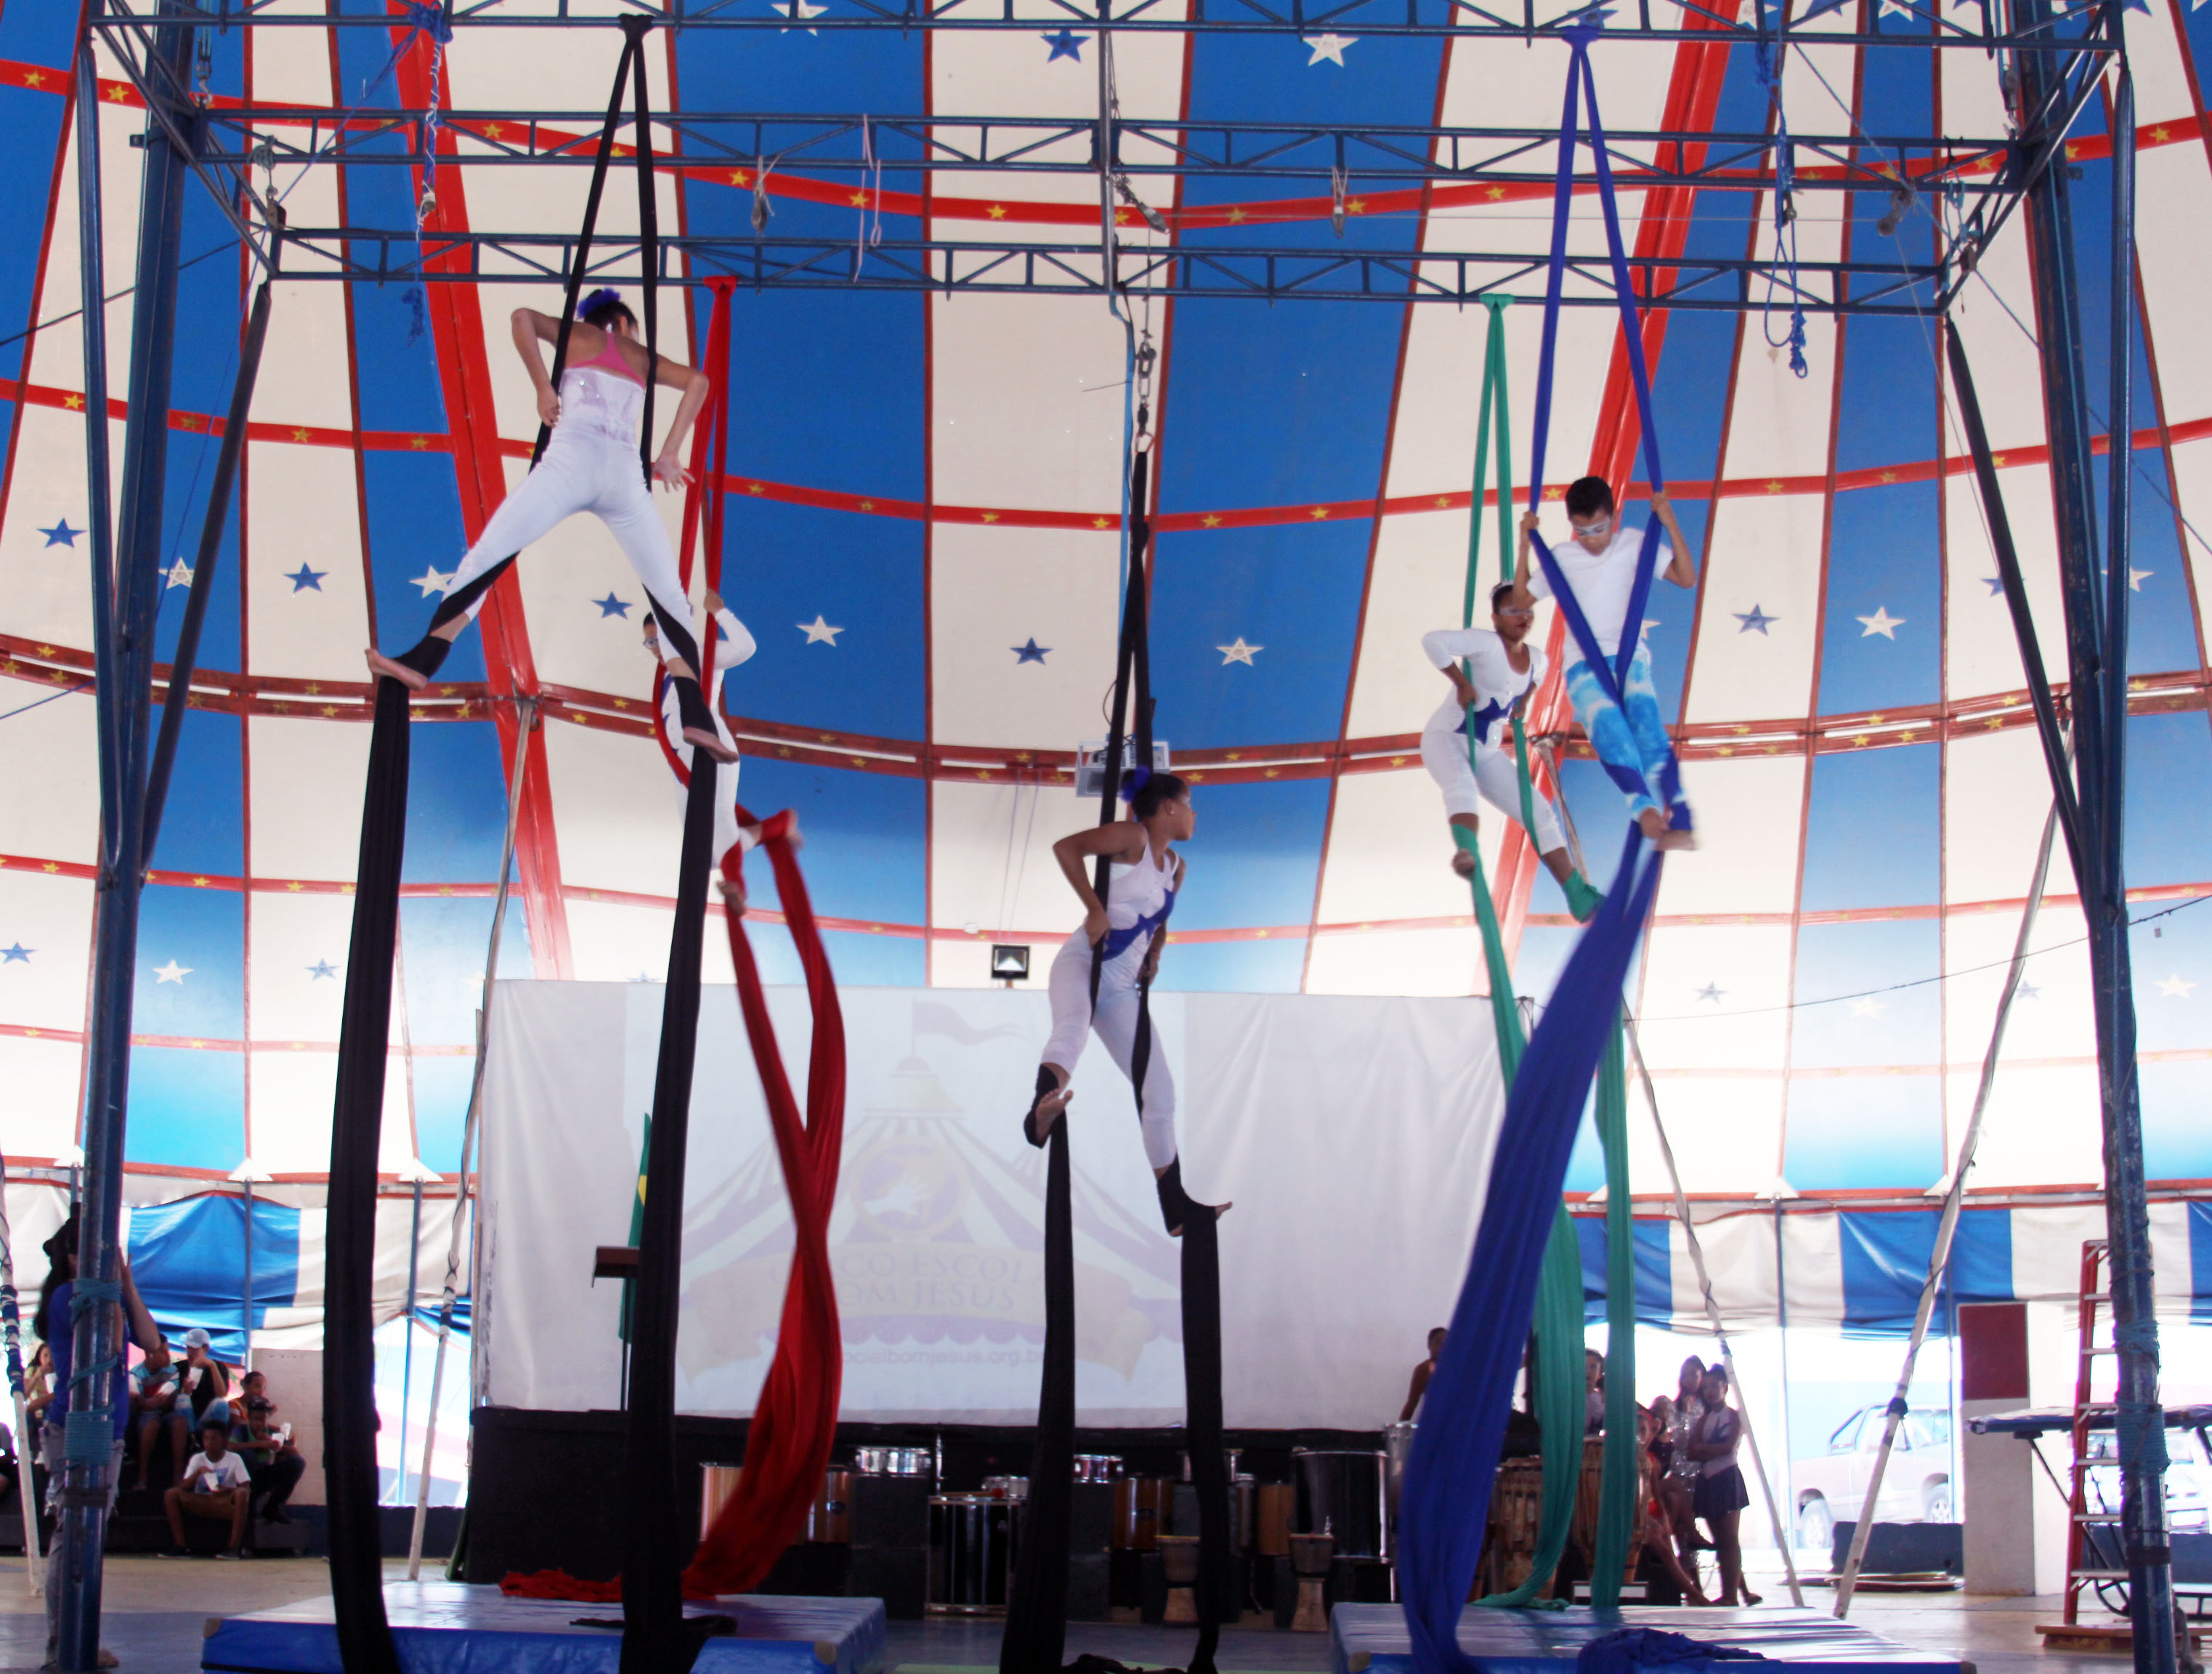 Dentro de uma lona de circo nas cores branca, vermelha e azul, cinco crianças se apresentaram com movimentos circenses enrolados em um tecido pendurado no teto.